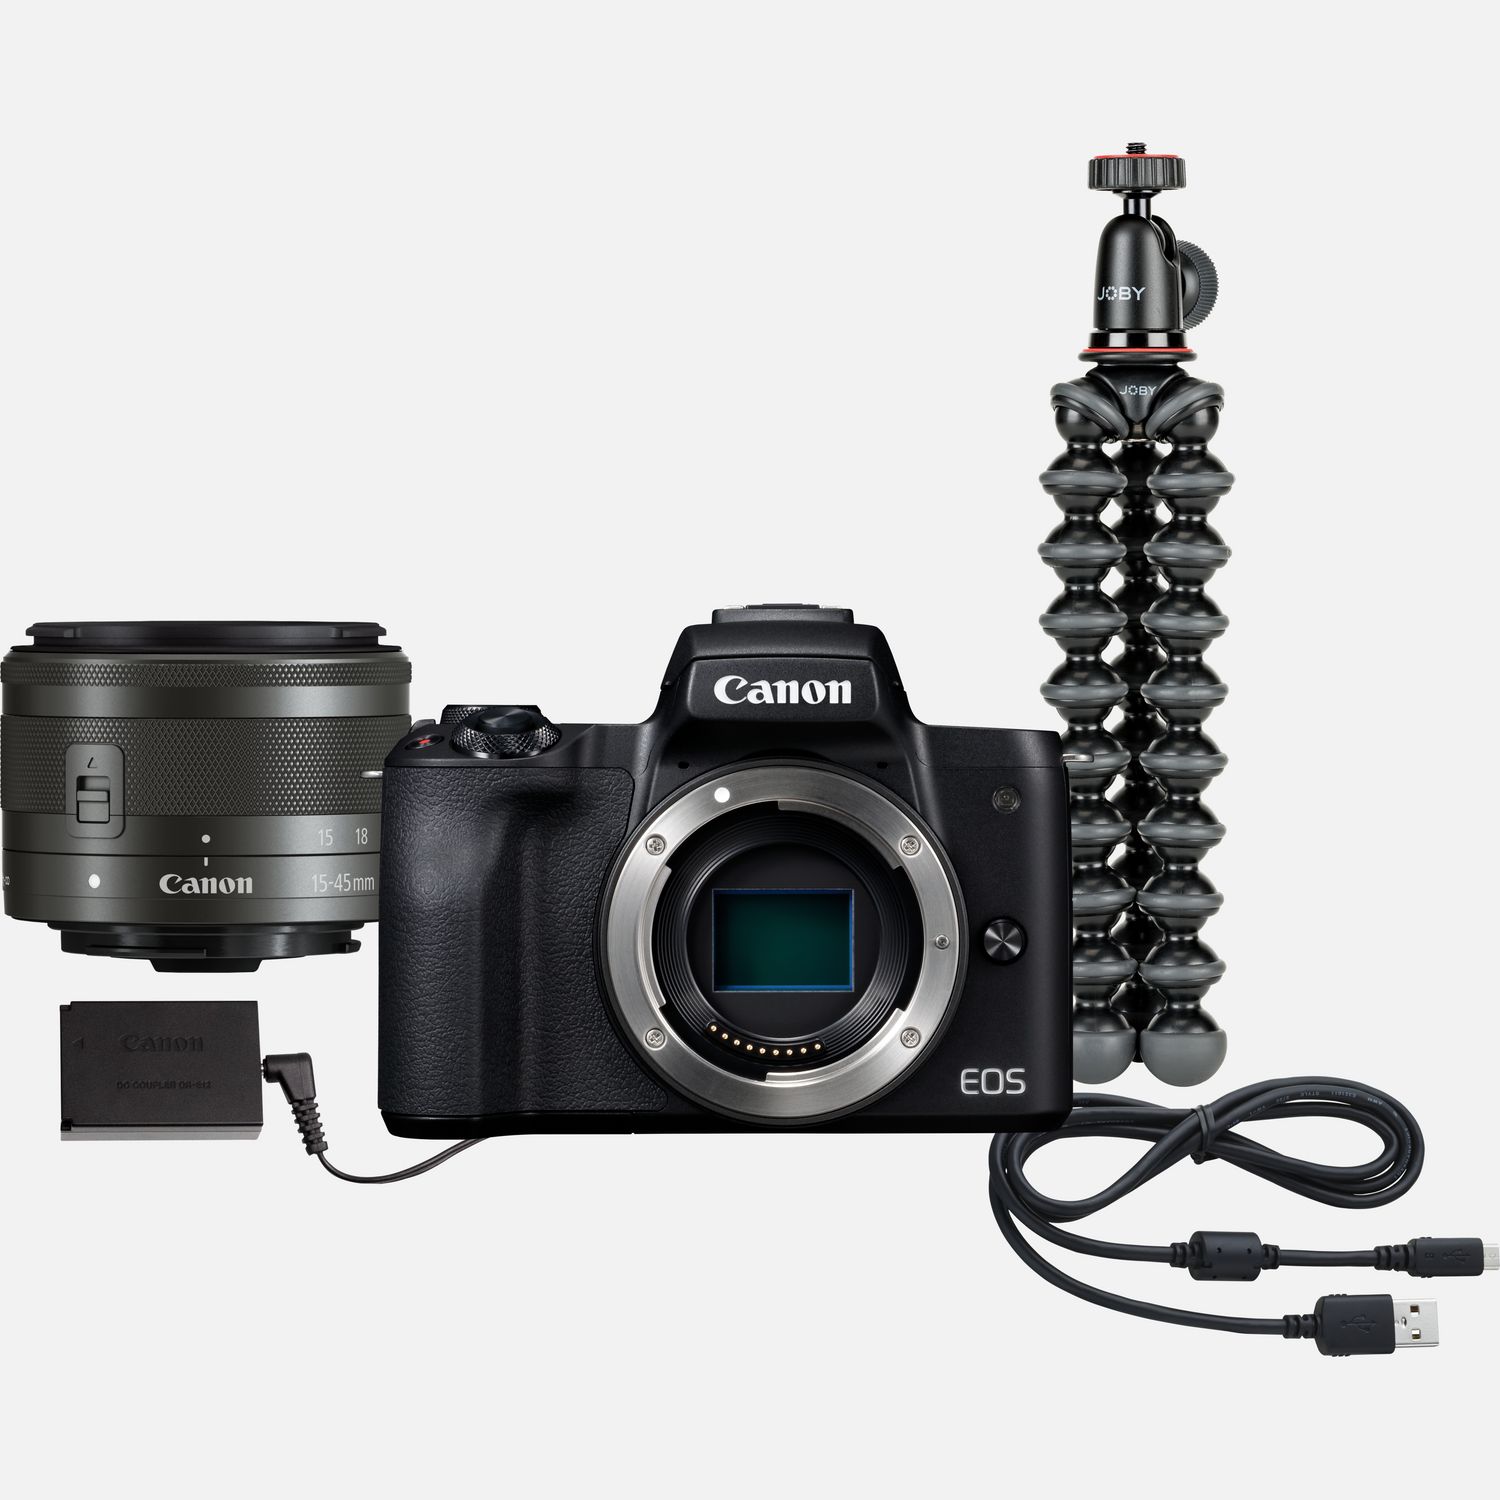 Image of Kit da videoconferenza con fotocamera EOS M50 e obiettivo intercambiabile Canon